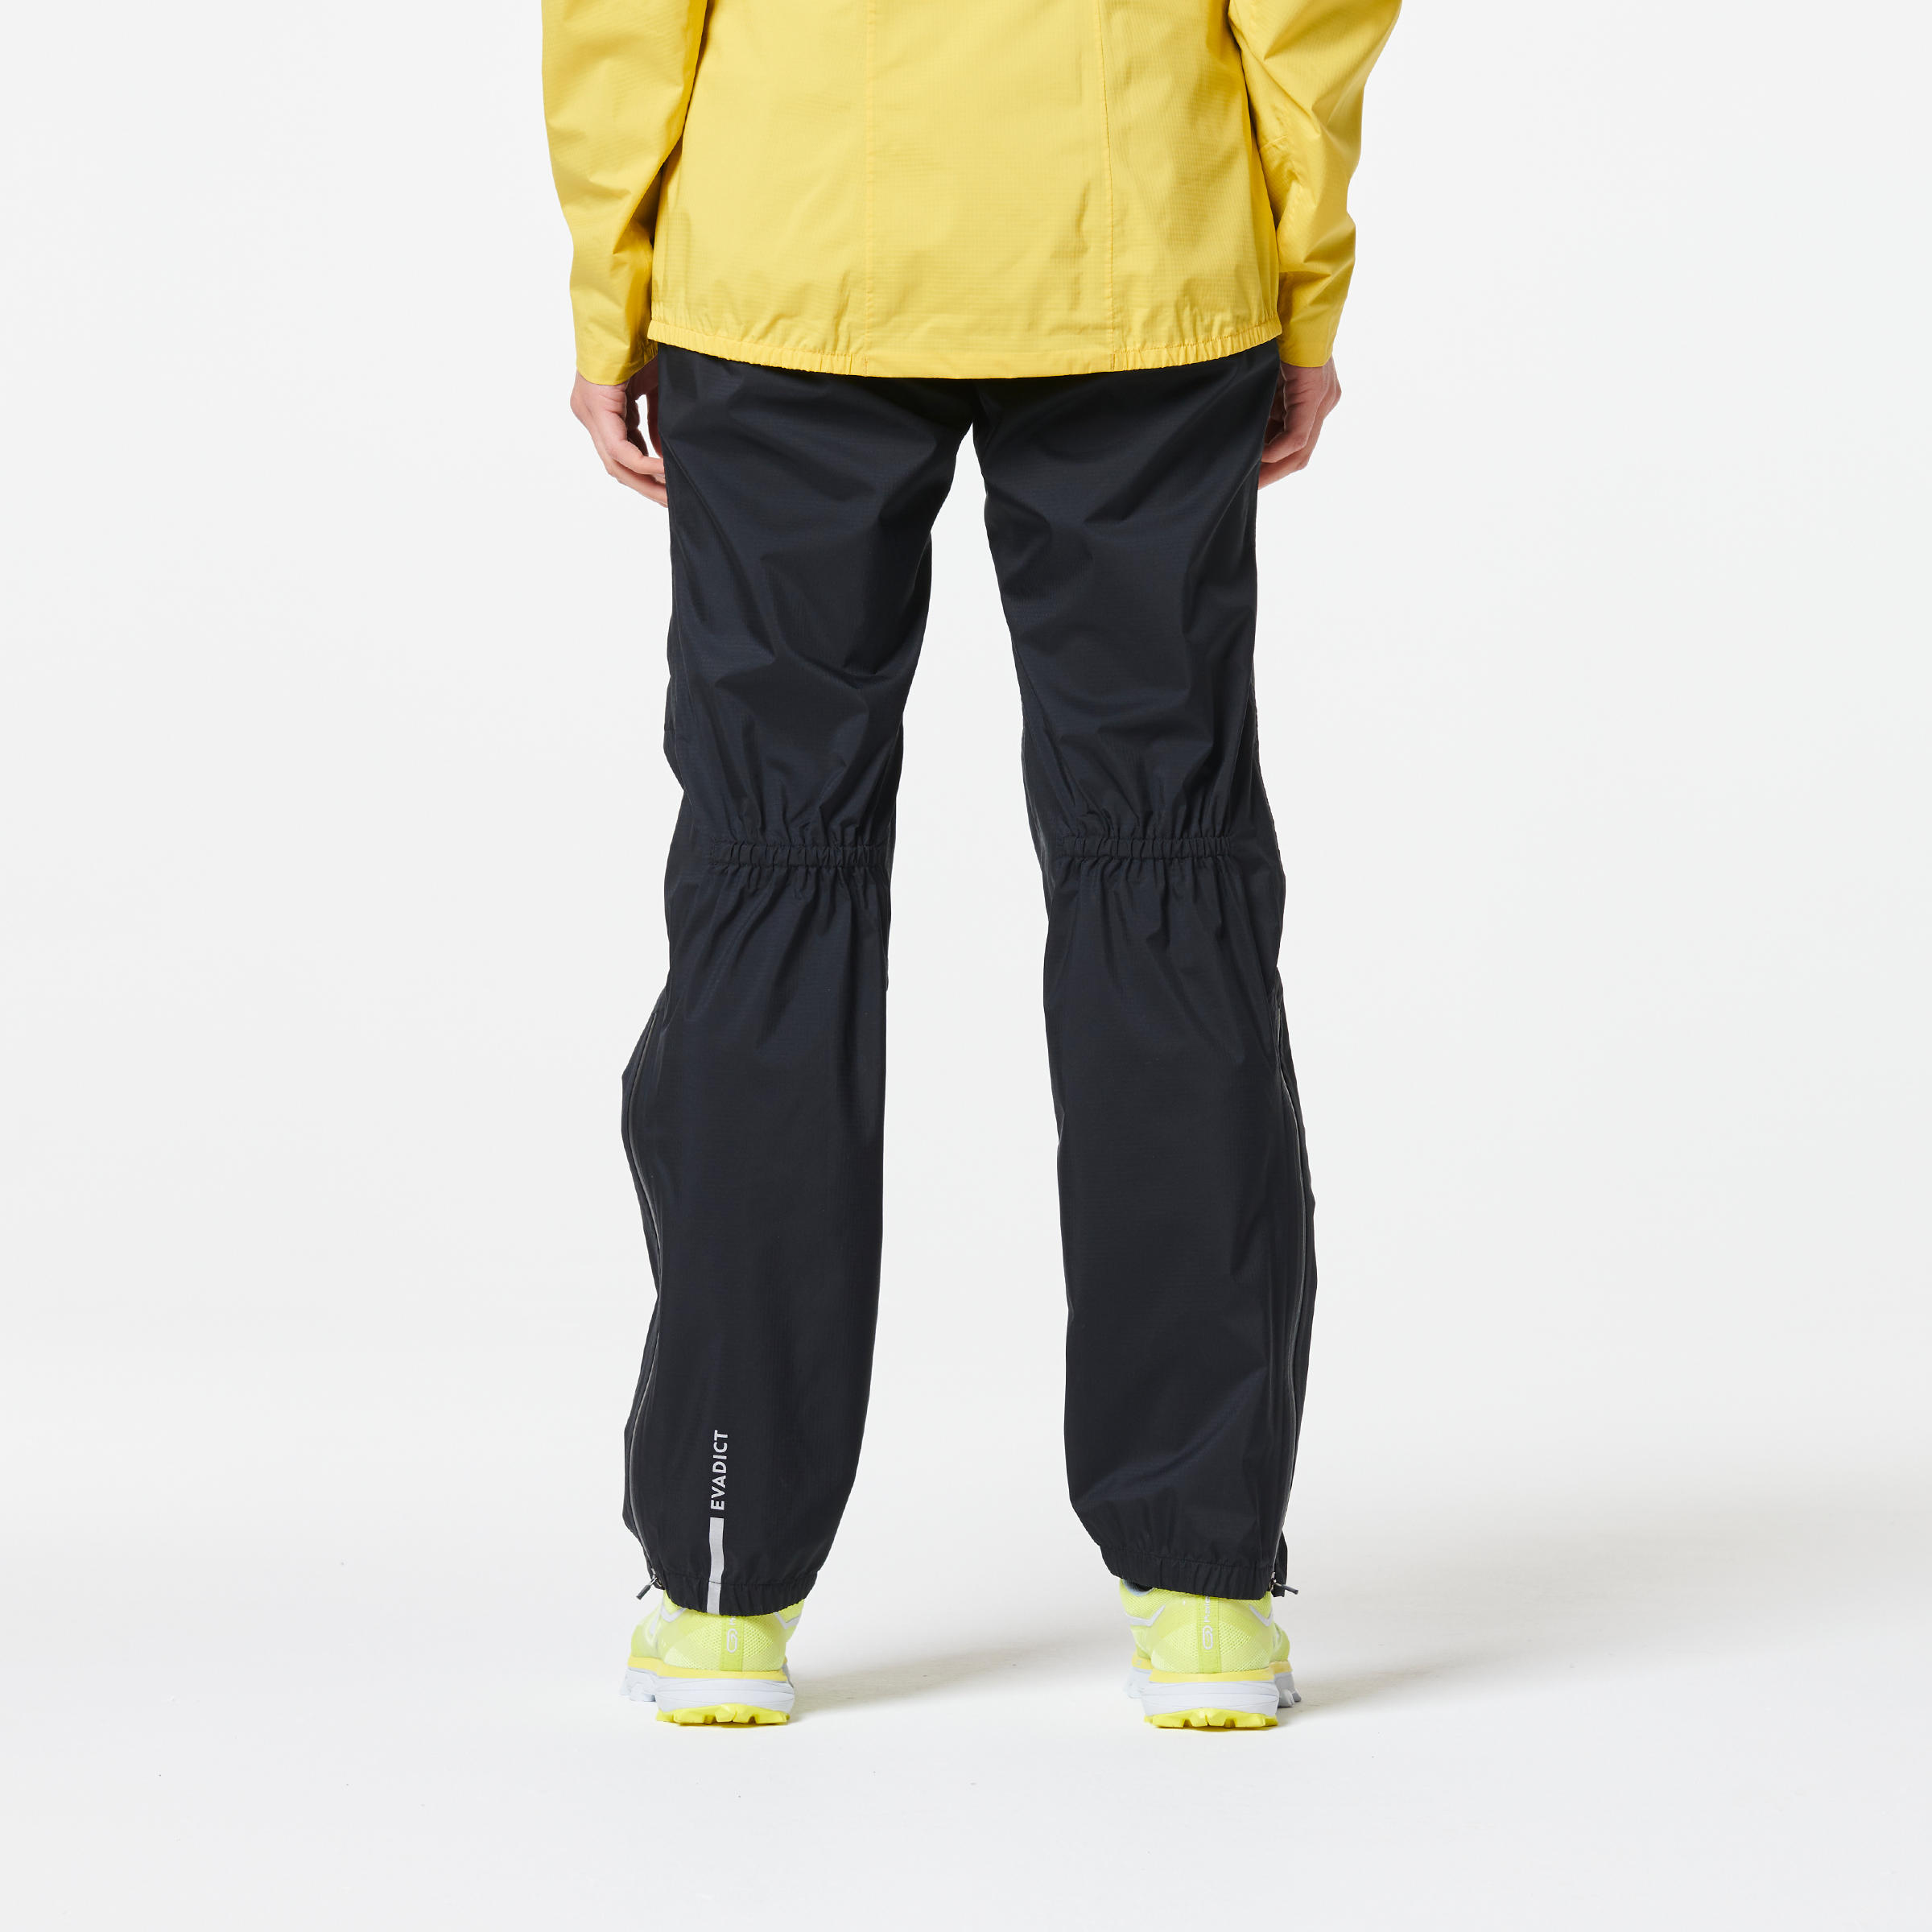 Buy Men's Mountaineering Trousers Online | Decathlon